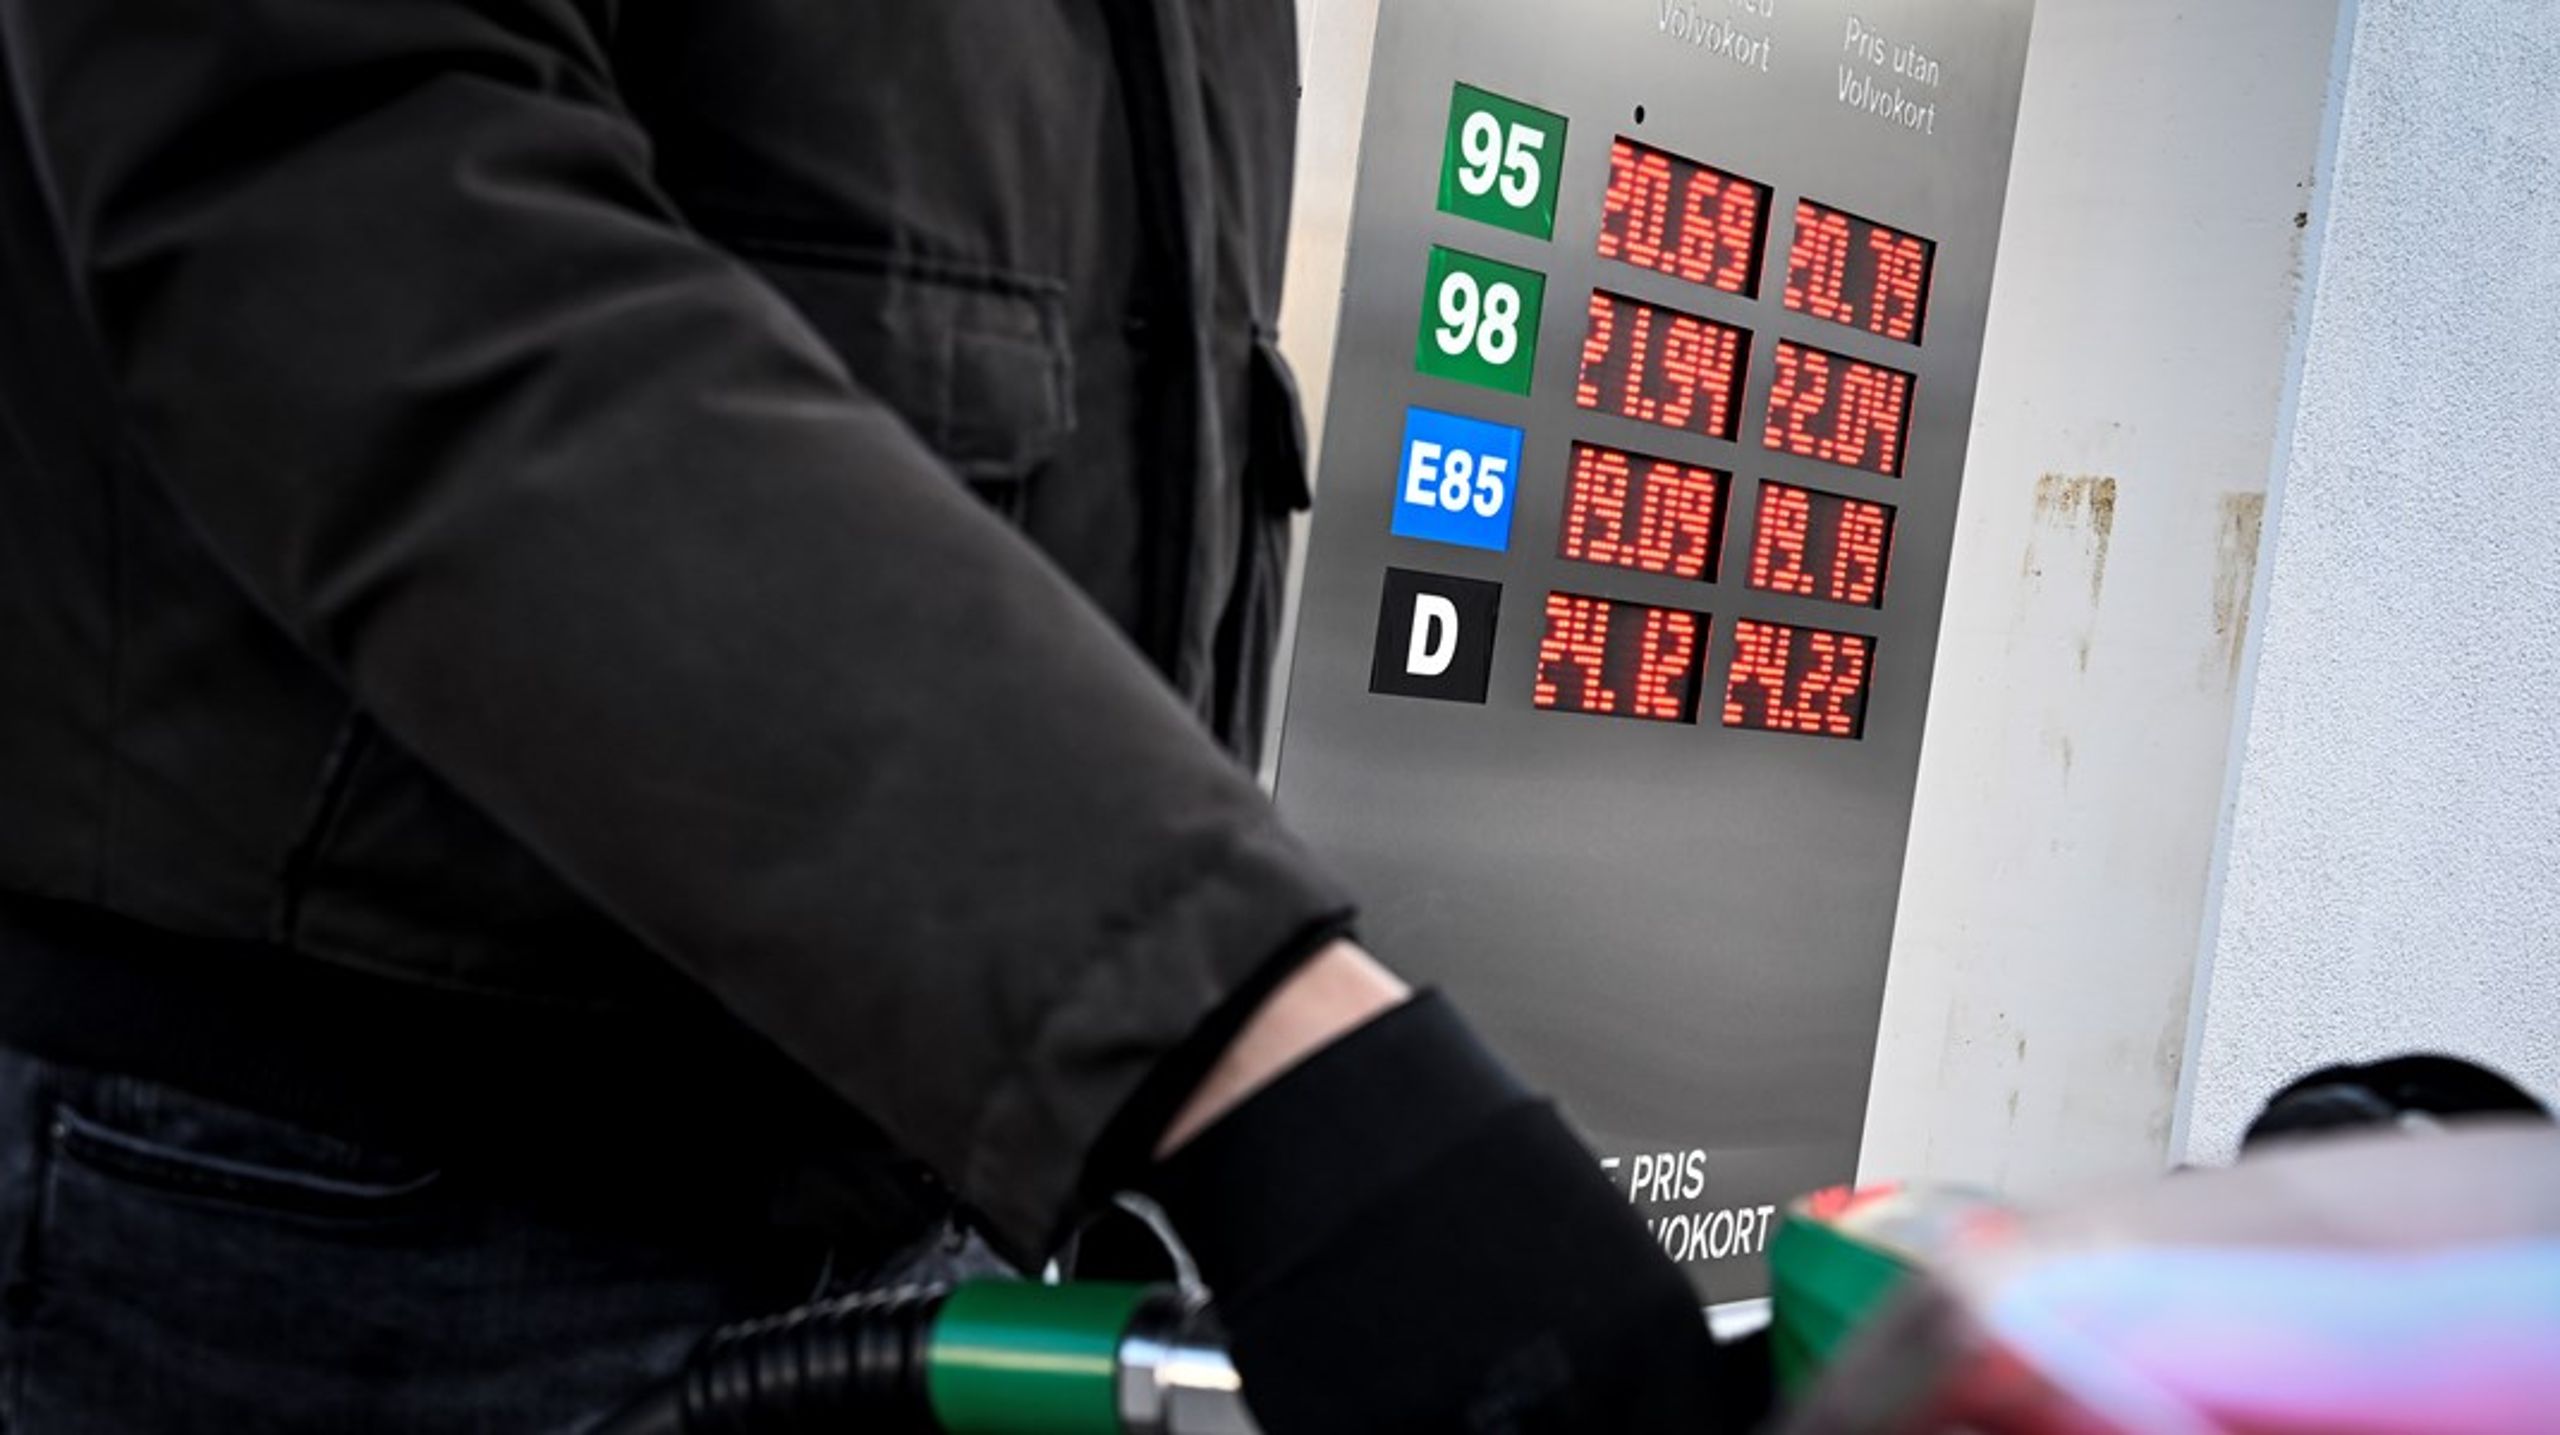 ”Att lova att sänka skatten på bensin och diesel samtidigt som man säger sig vilja värna fattiga människor i glesbygd är ohederligt och vilseledande”. skriver tidigare MP-statssekreterarna Eva Svedling och Gunvor G Ericson.